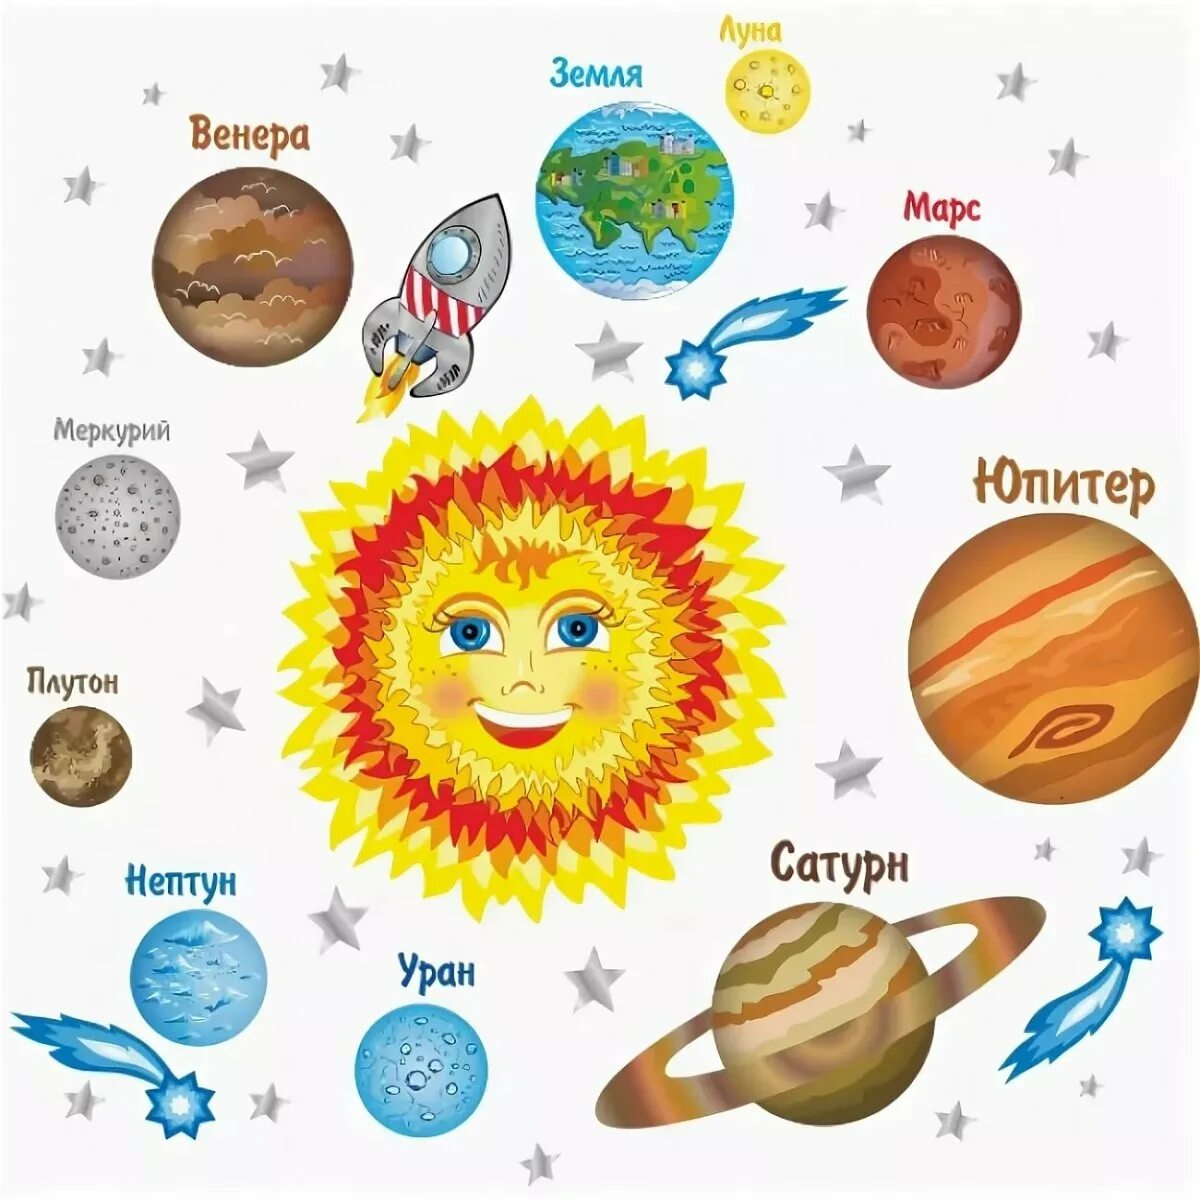 Солнечная система рисунок с названиями планет для детей. Солнечная система для дет. С12нечная система 32я 3етей. Планеты Солнечная системы д я детей.